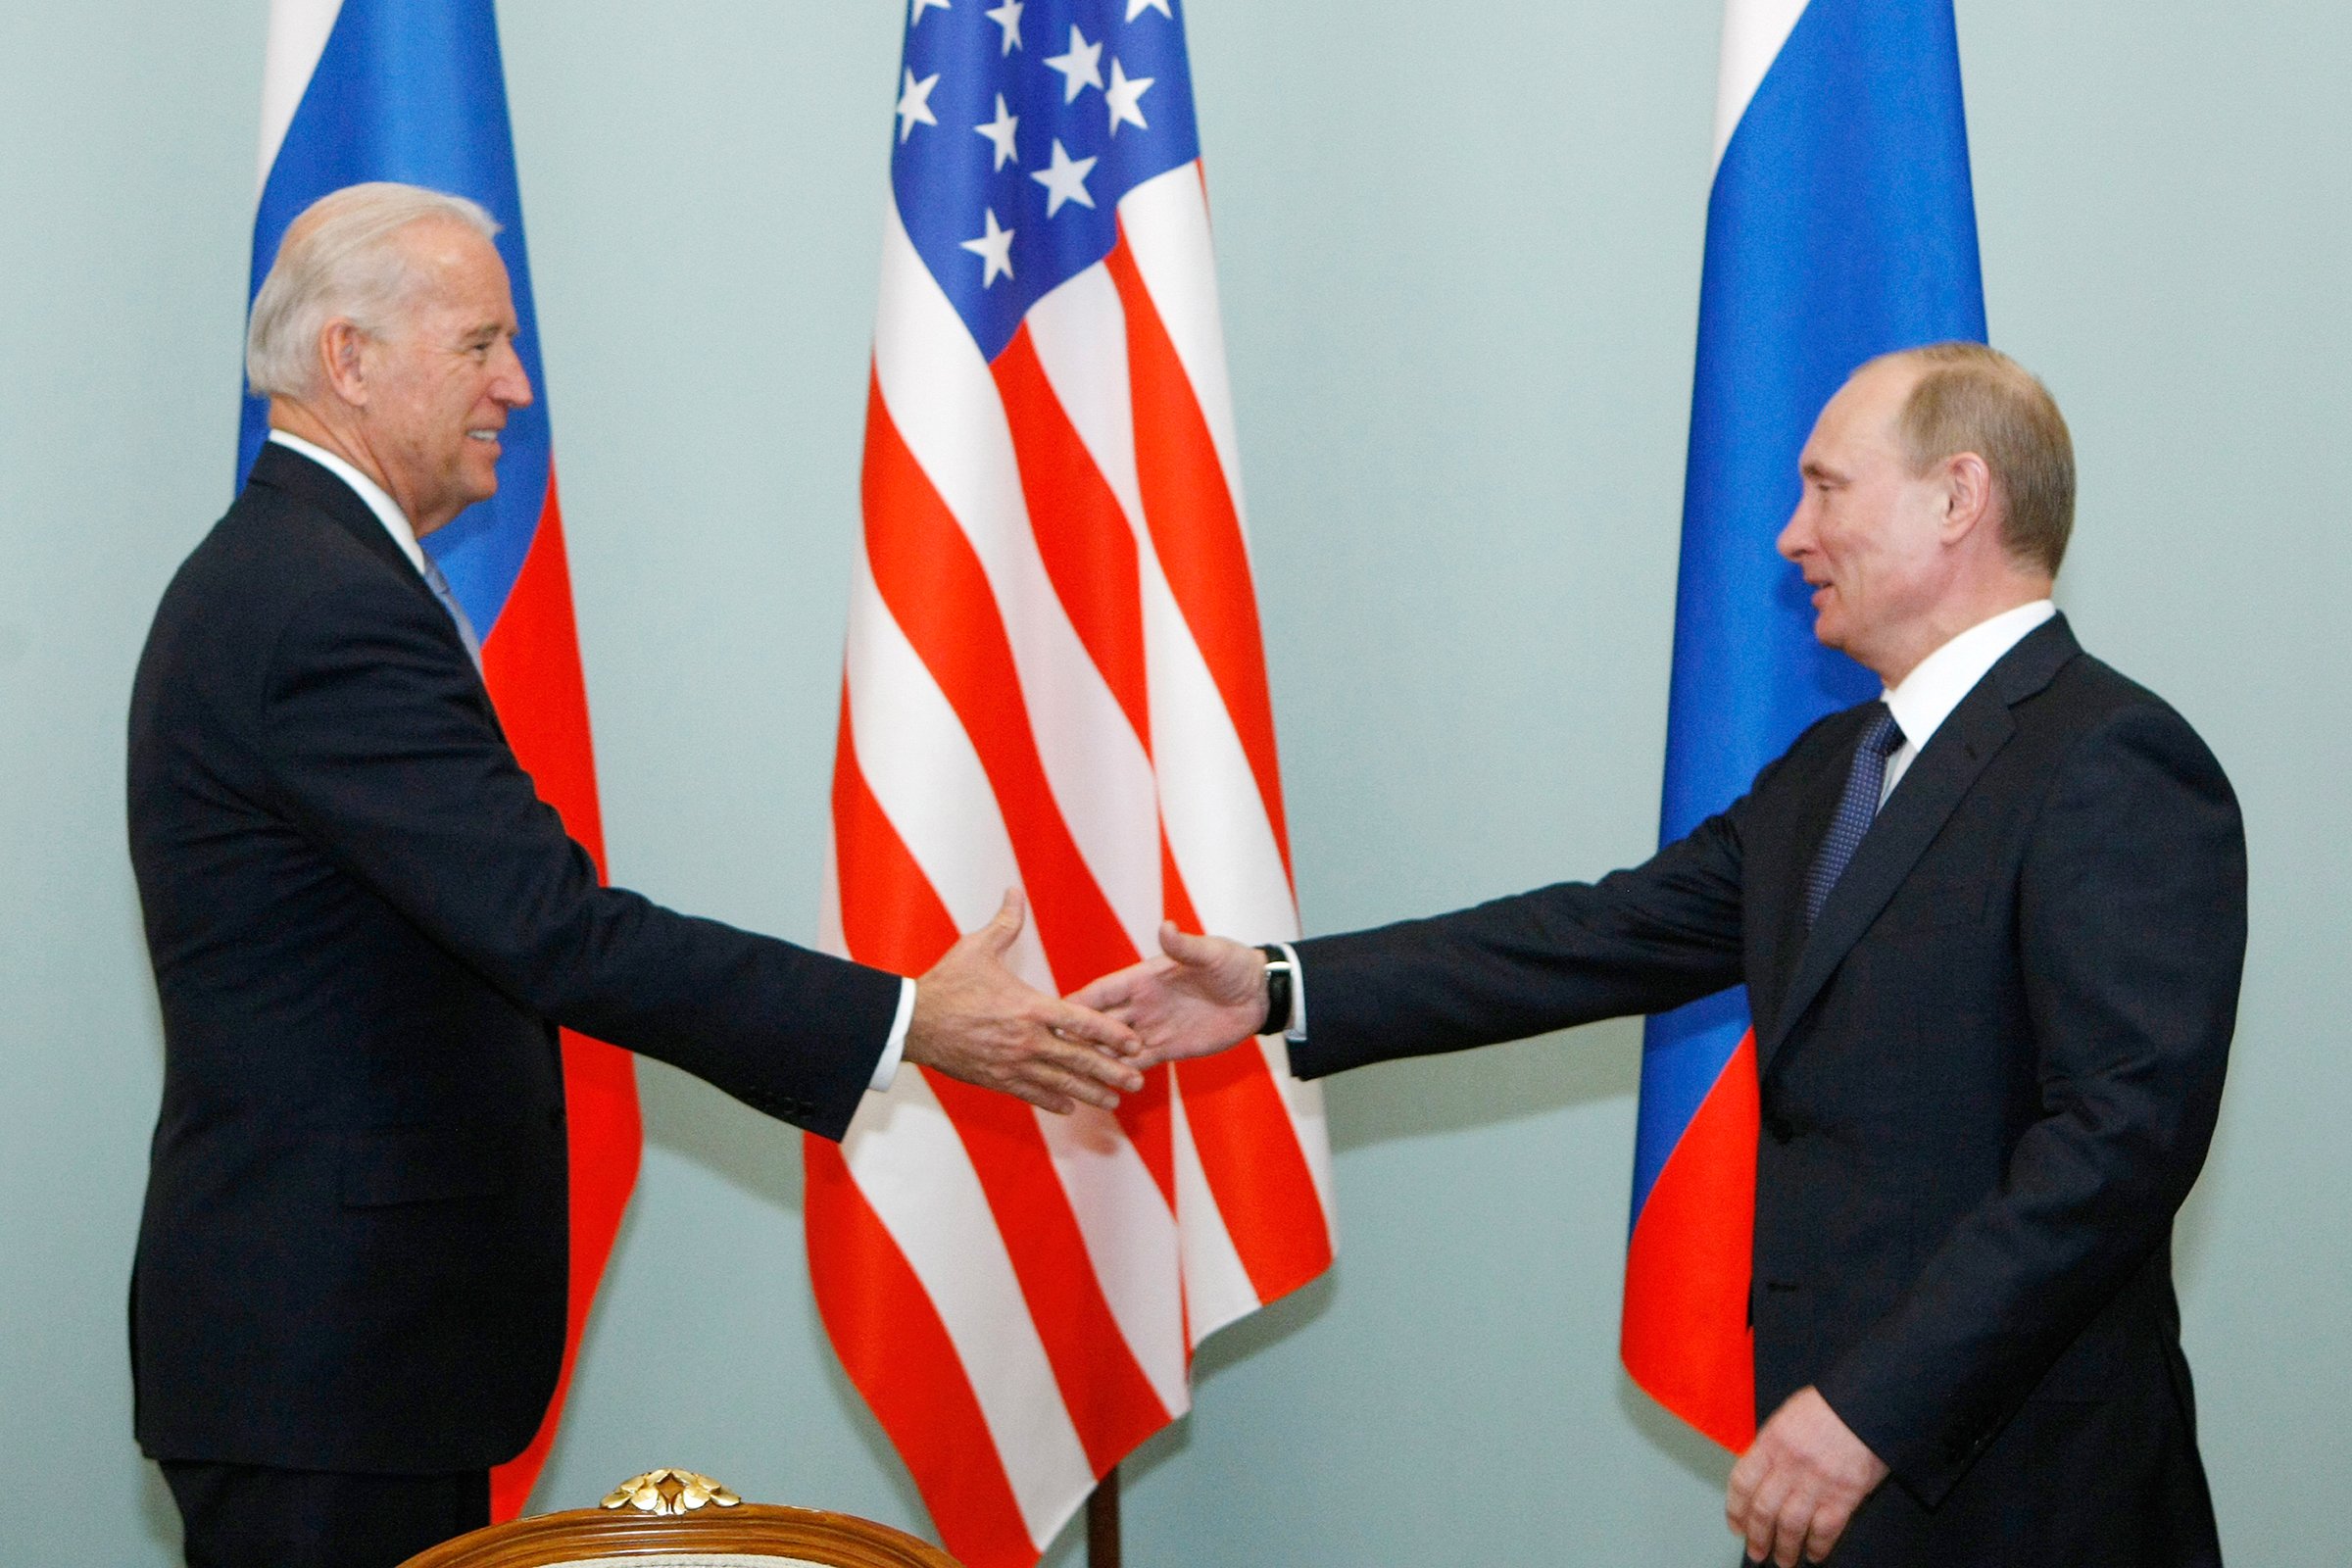  SUA și Rusia, declarație comună despre stabilitatea strategică: Un război nuclear nu trebuie să aibă loc niciodată